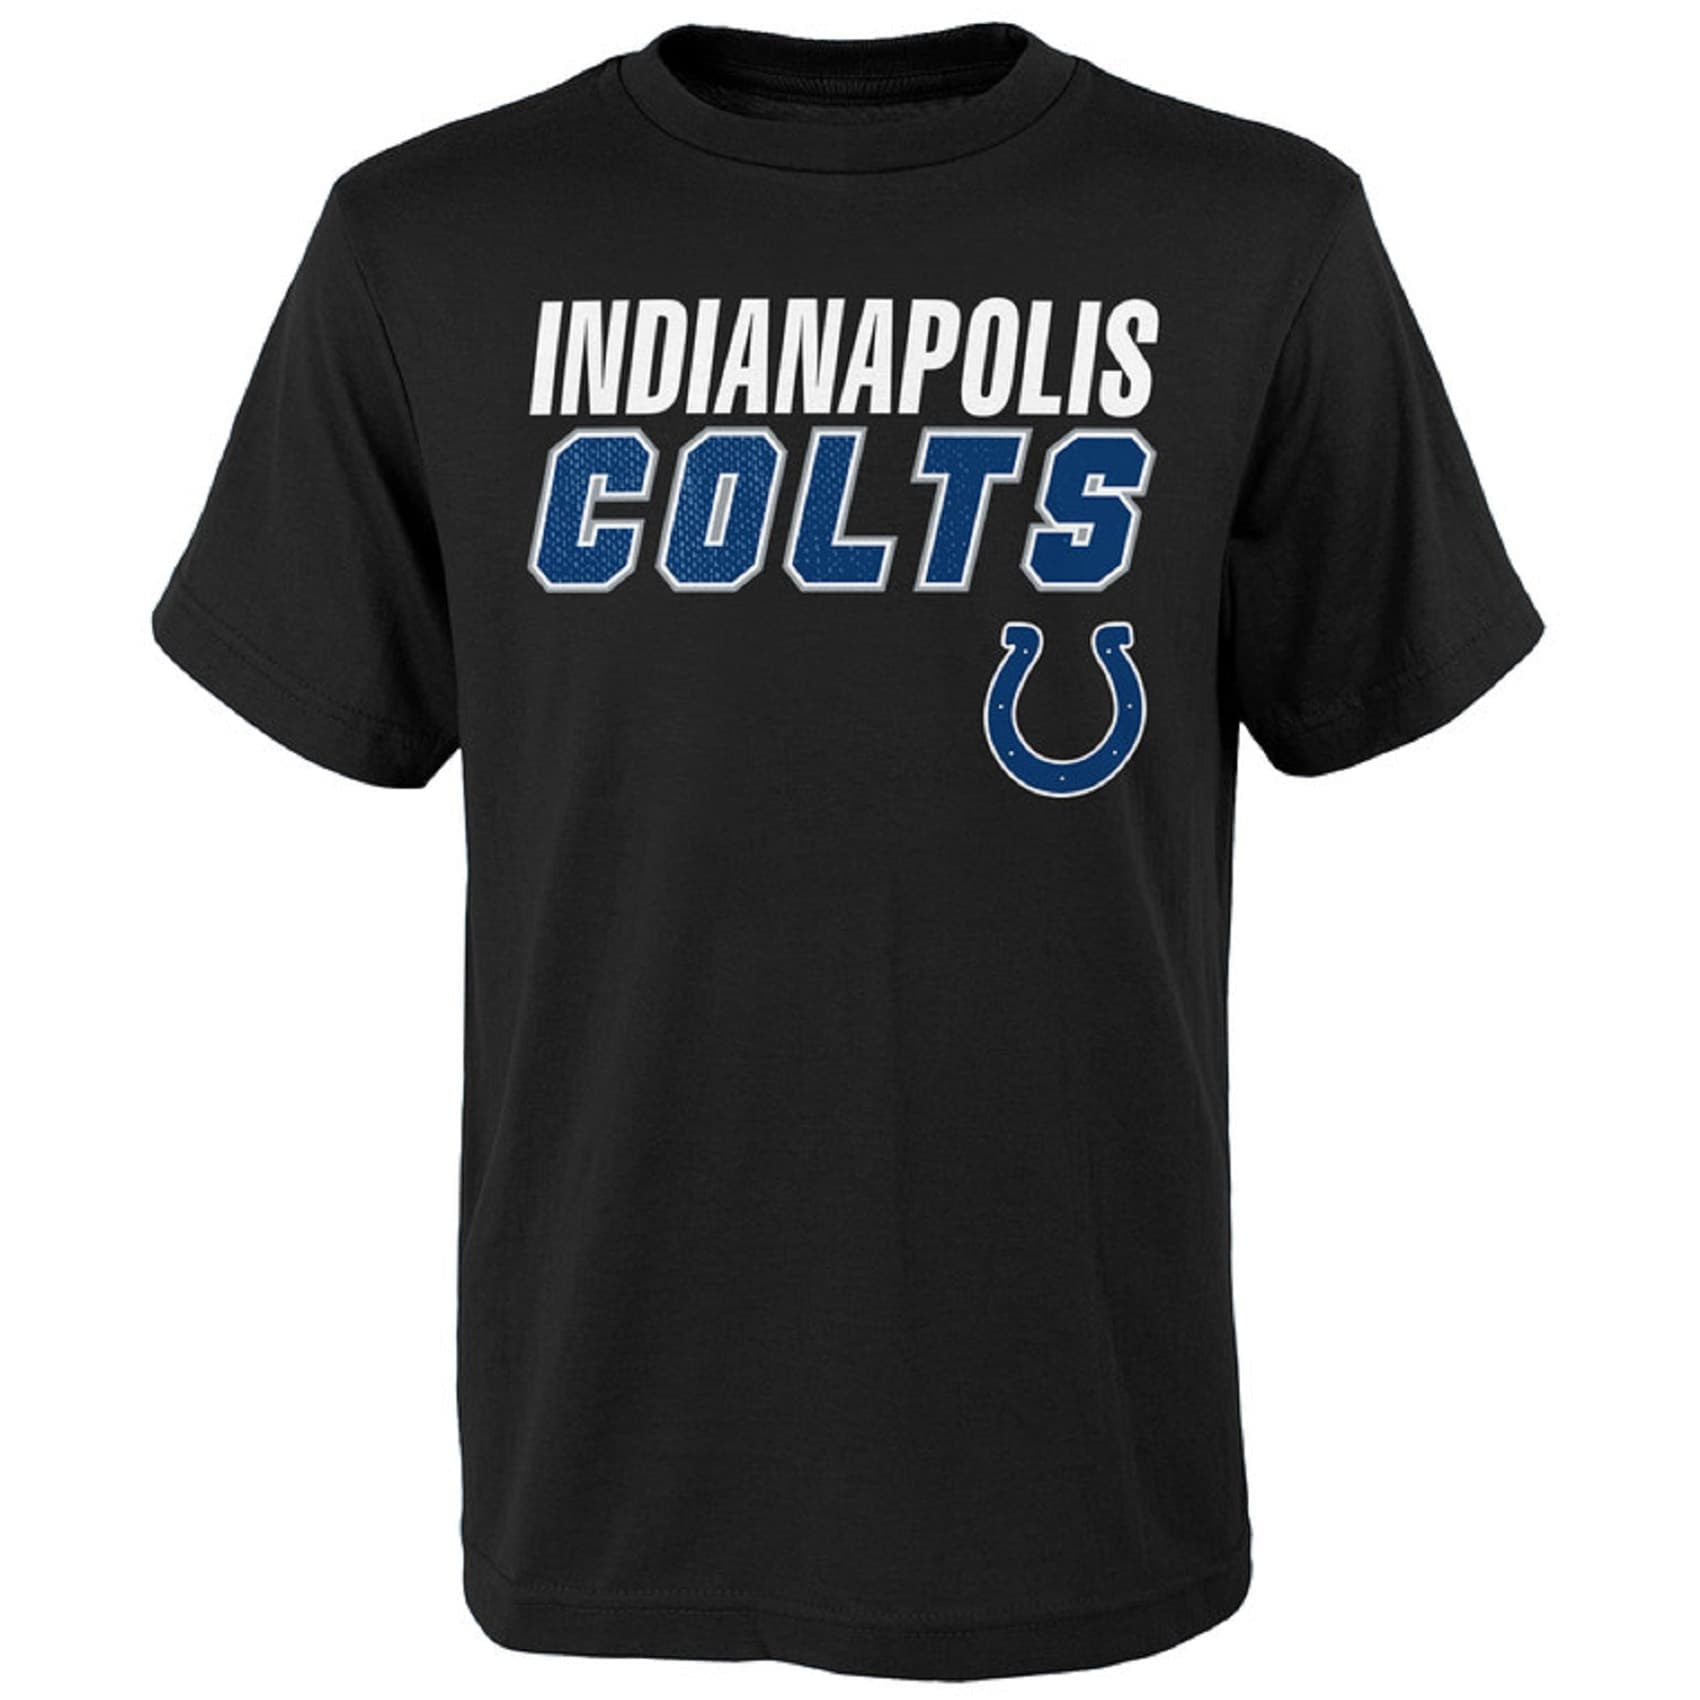 Indianapolis Colts man T shirt